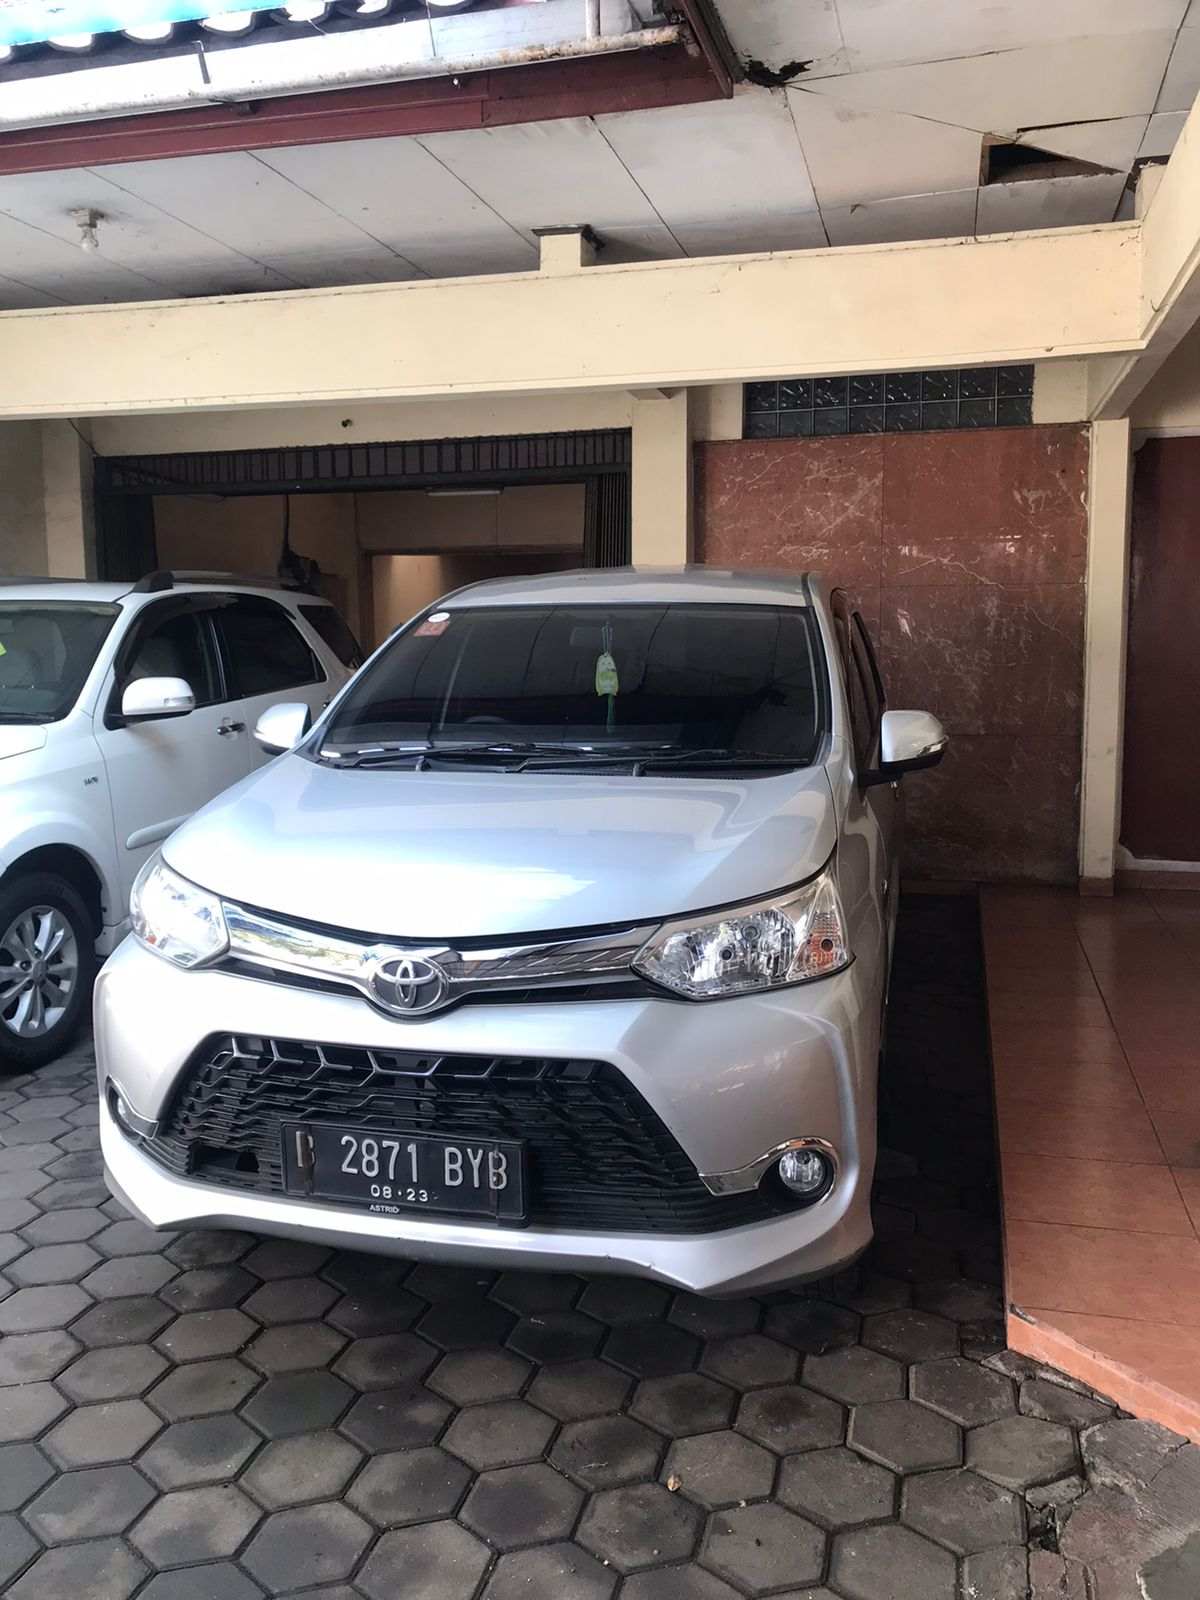 Rental Mobil Avanza Di Semarang